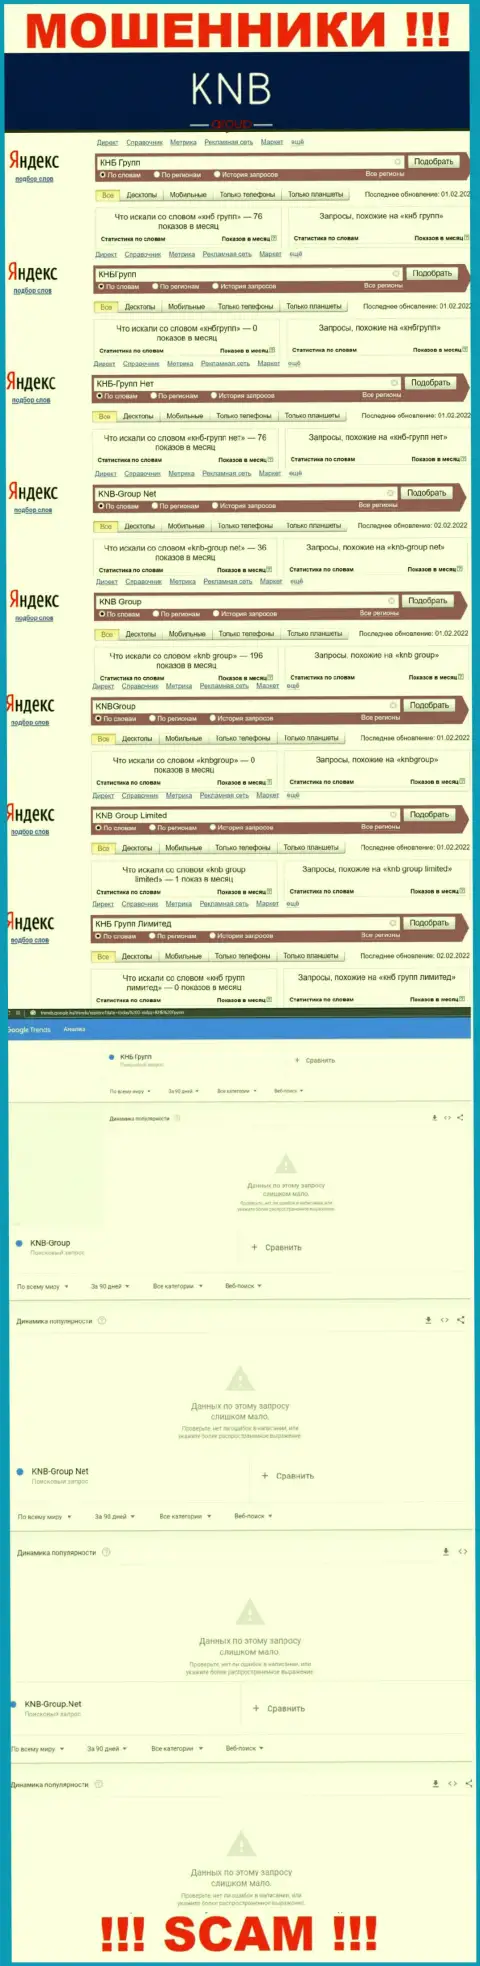 Скриншот итога online запросов по противозаконно действующей организации KNB-Group Net